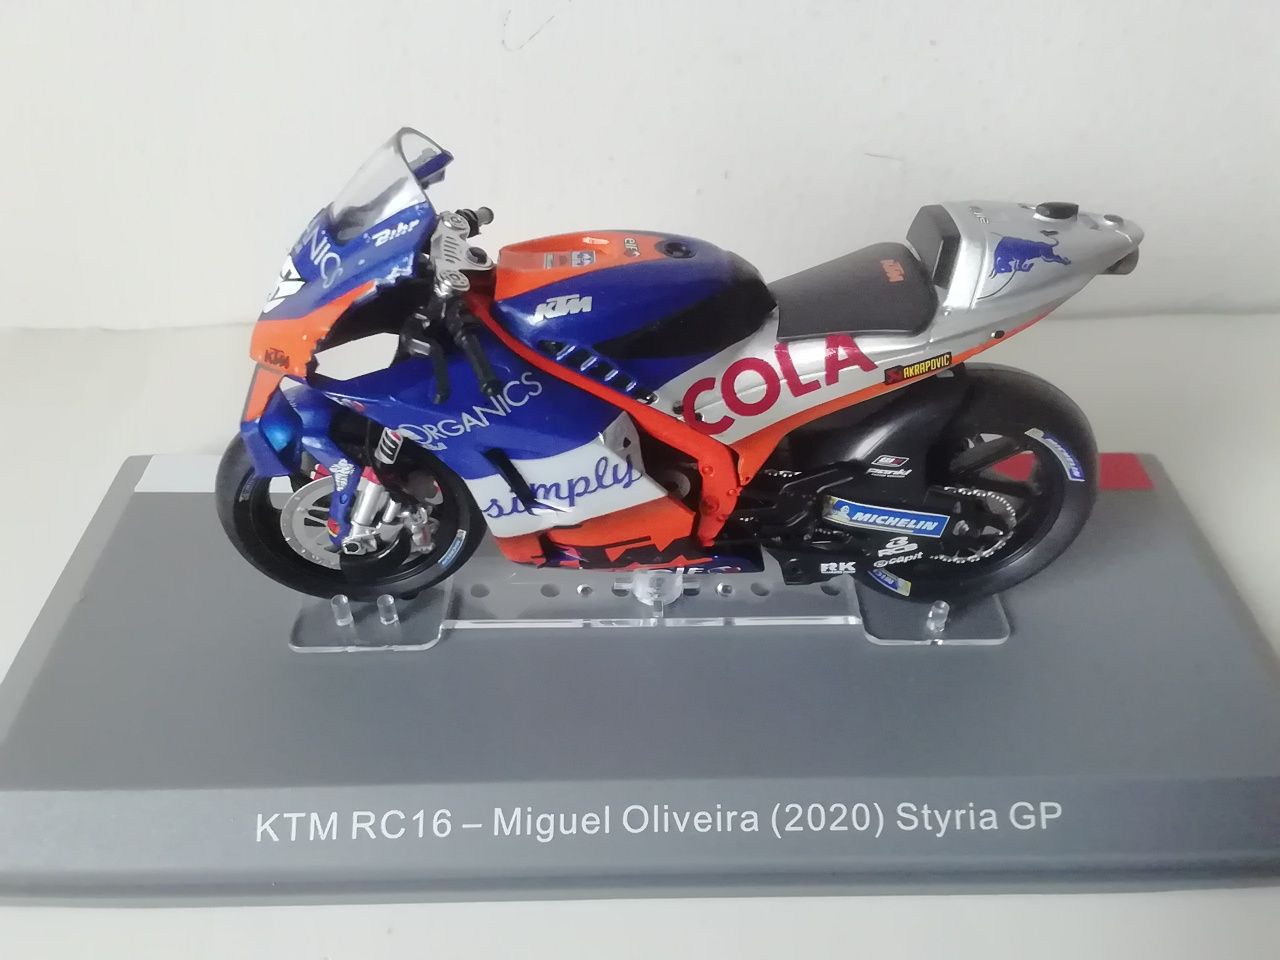 Motas KTM Miguel Oliveira MotoGP 2020 e 2021